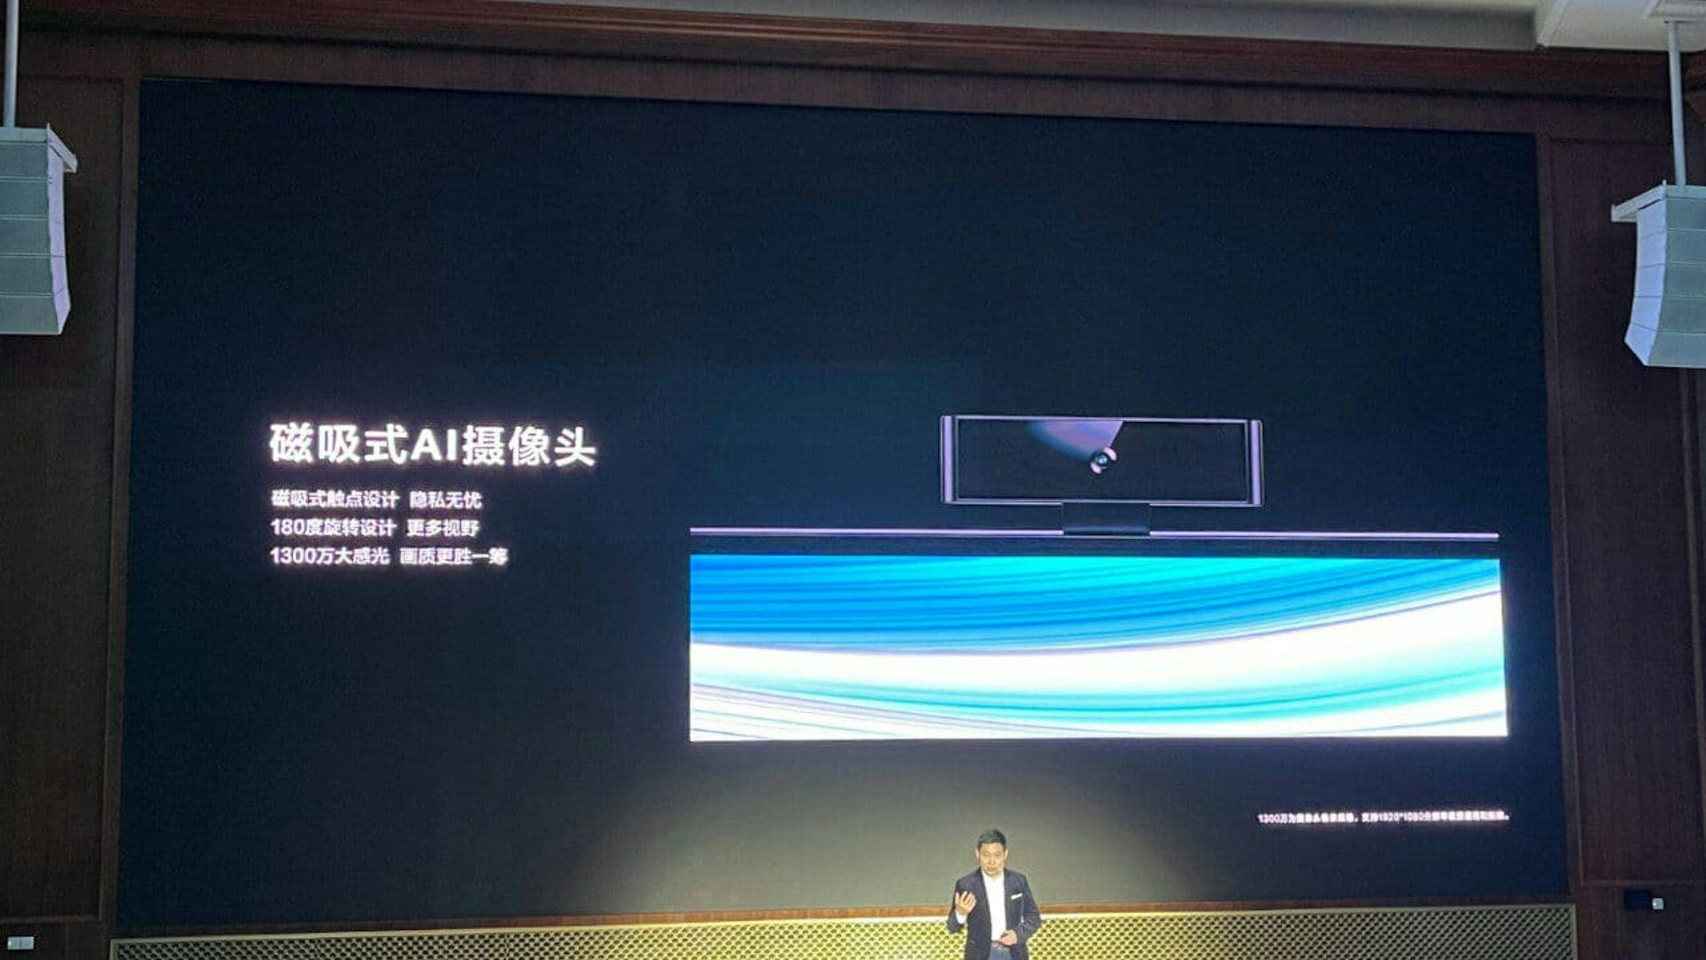 Los nuevos televisores de Huawei tienen una cámara integrada